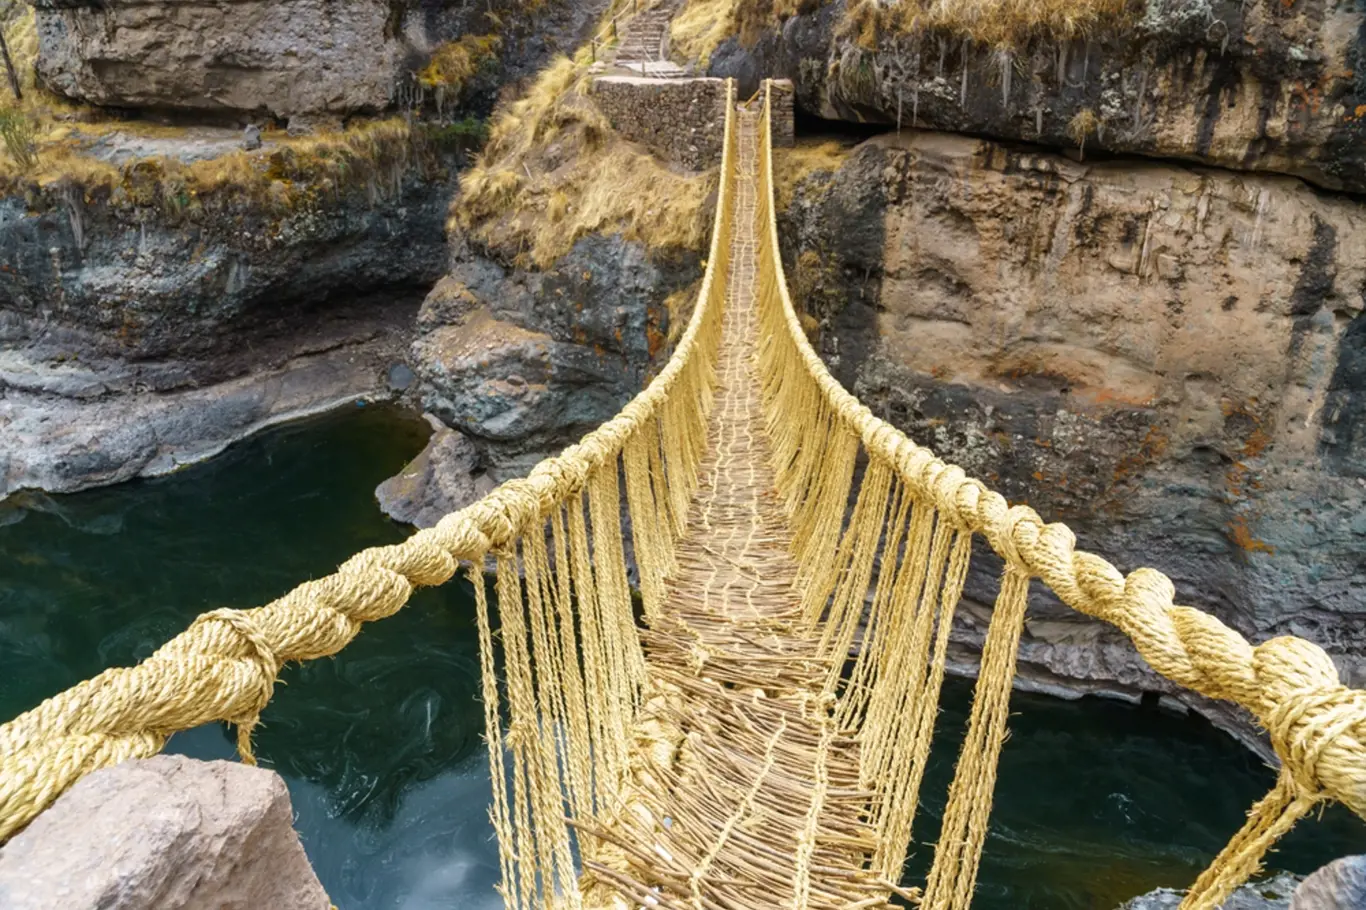 Incký most most z trávy Q'eswachaka v Peru